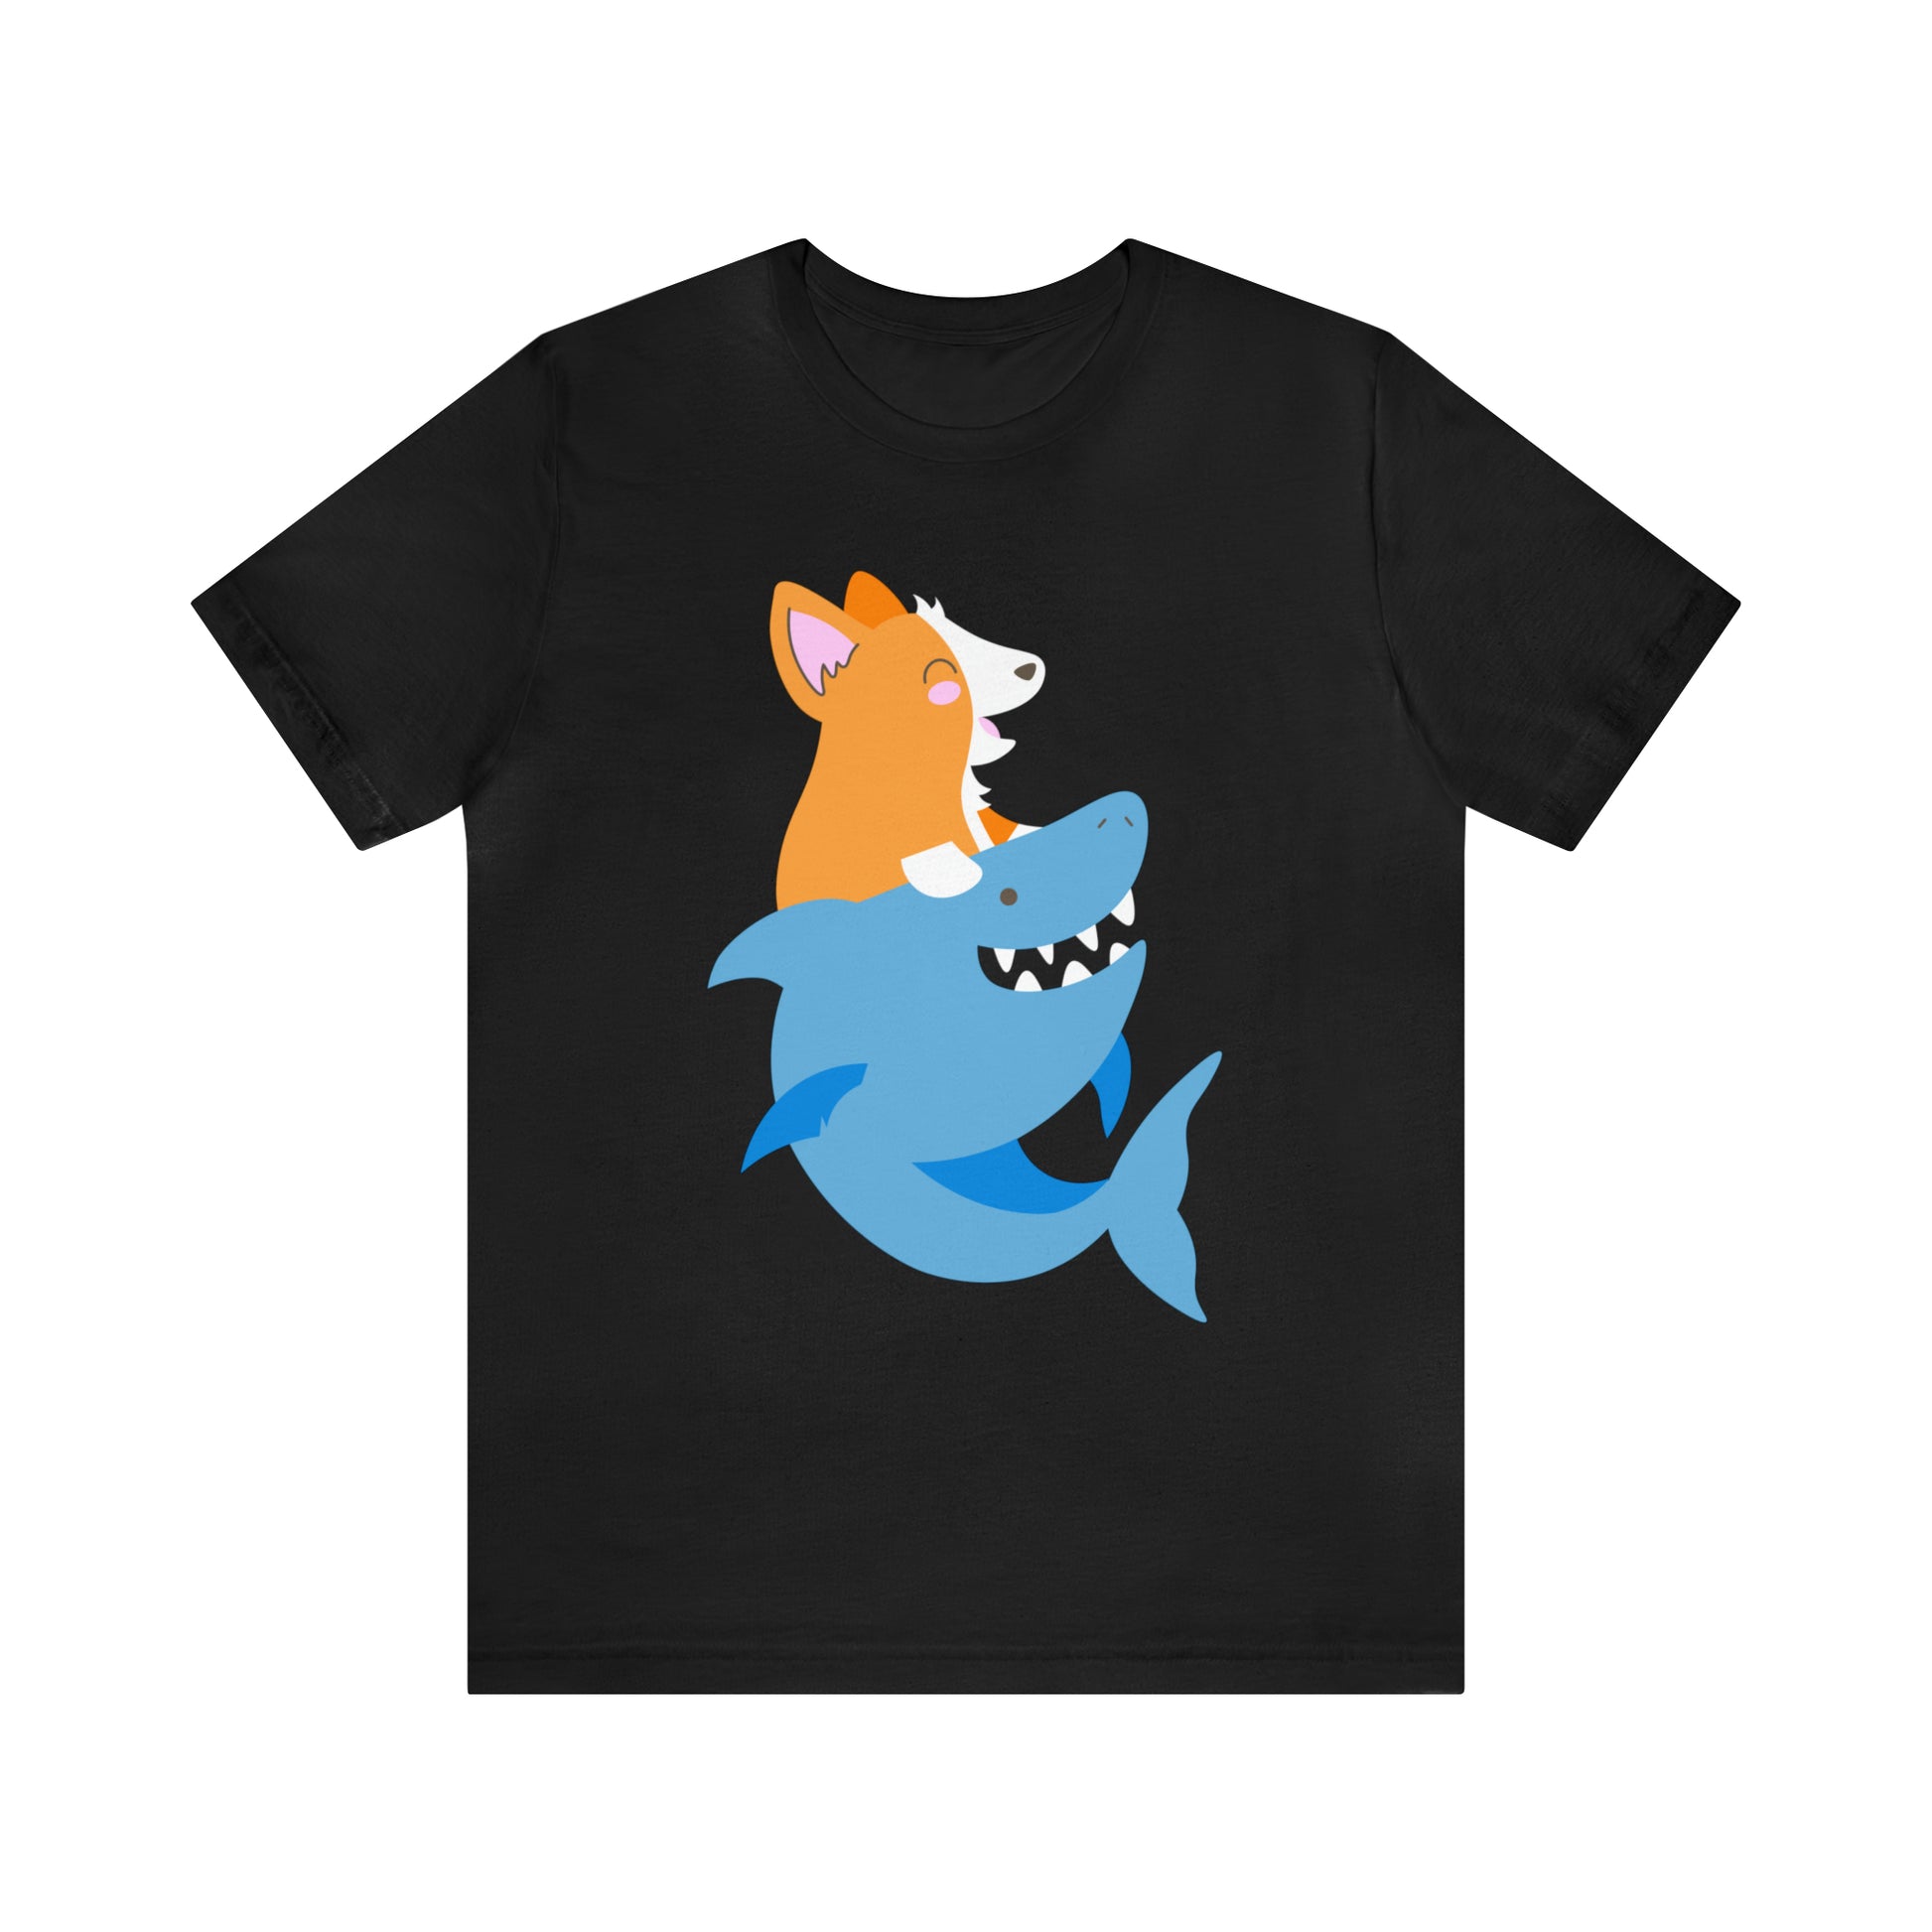 black corgi dog shark fish woman man t-shirt unisex short sleeve shirt